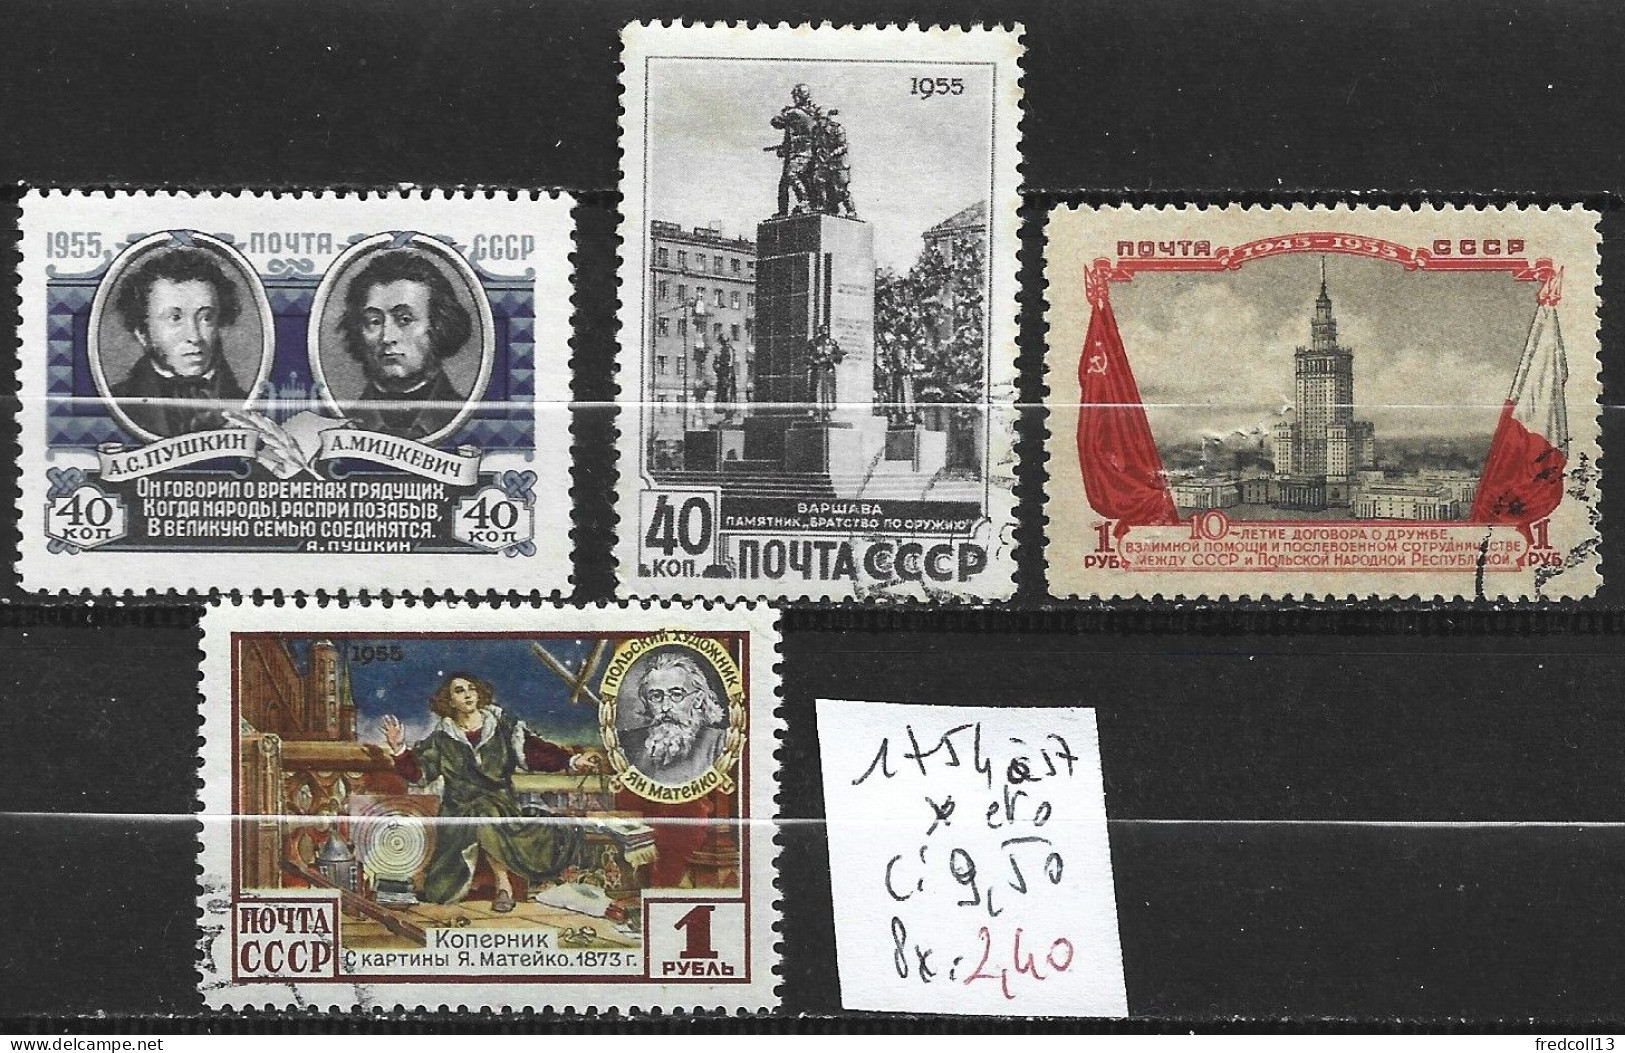 RUSSIE 1754 à 57 Oblitérés (1754 : * ) Côte 9.50 € - Used Stamps